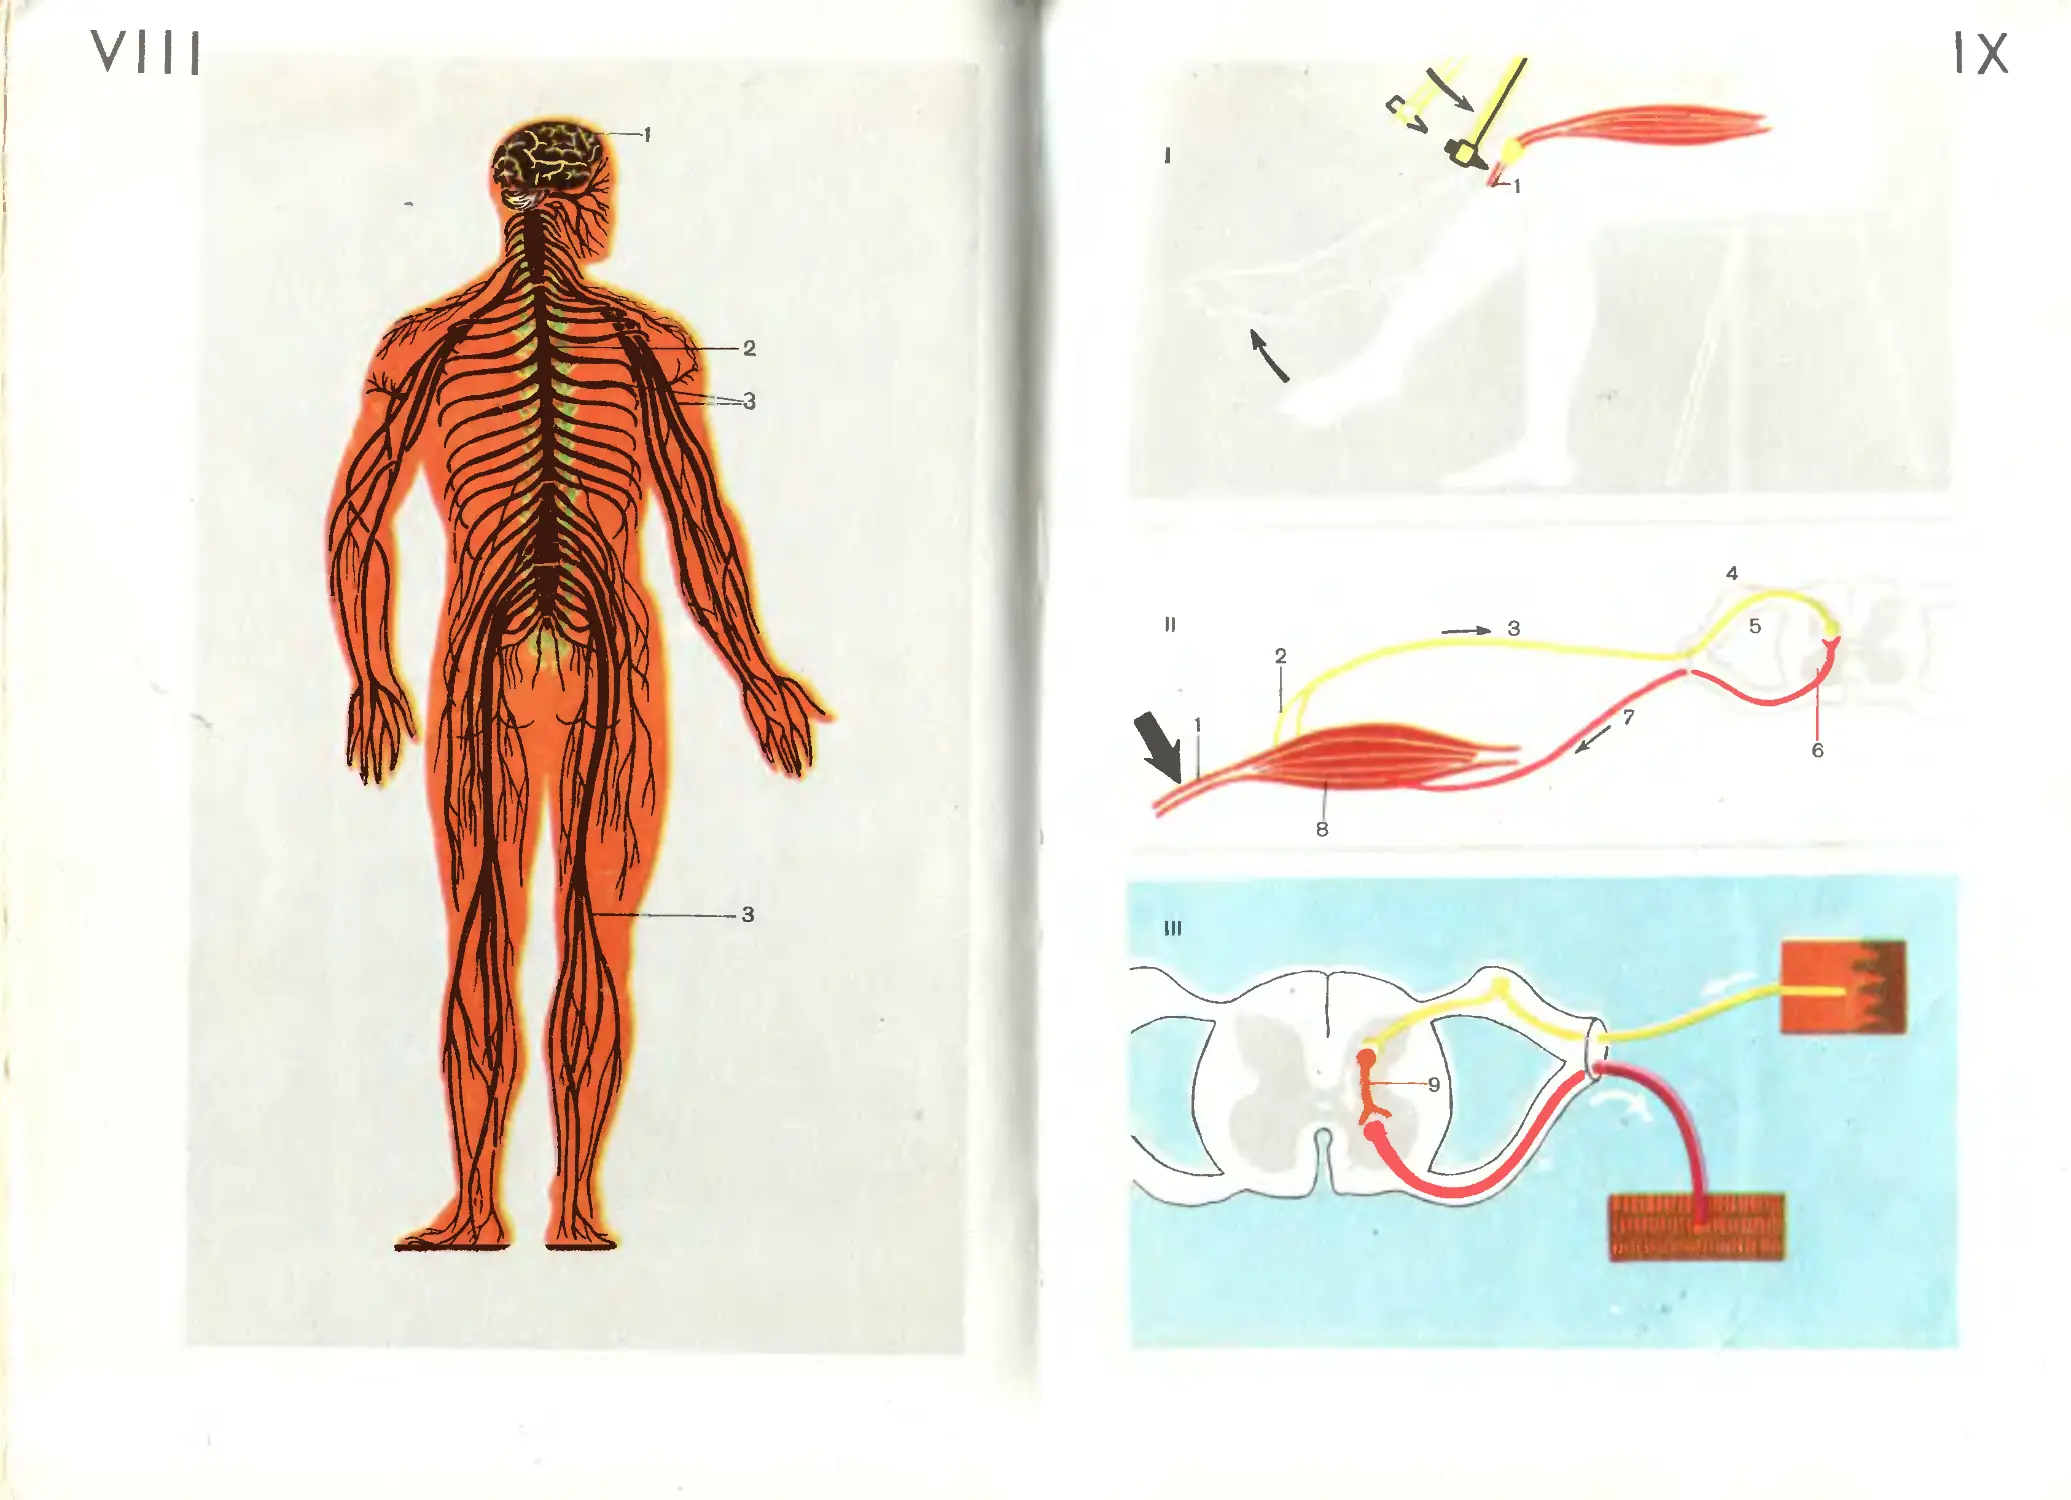 Учебник биологии анатомия